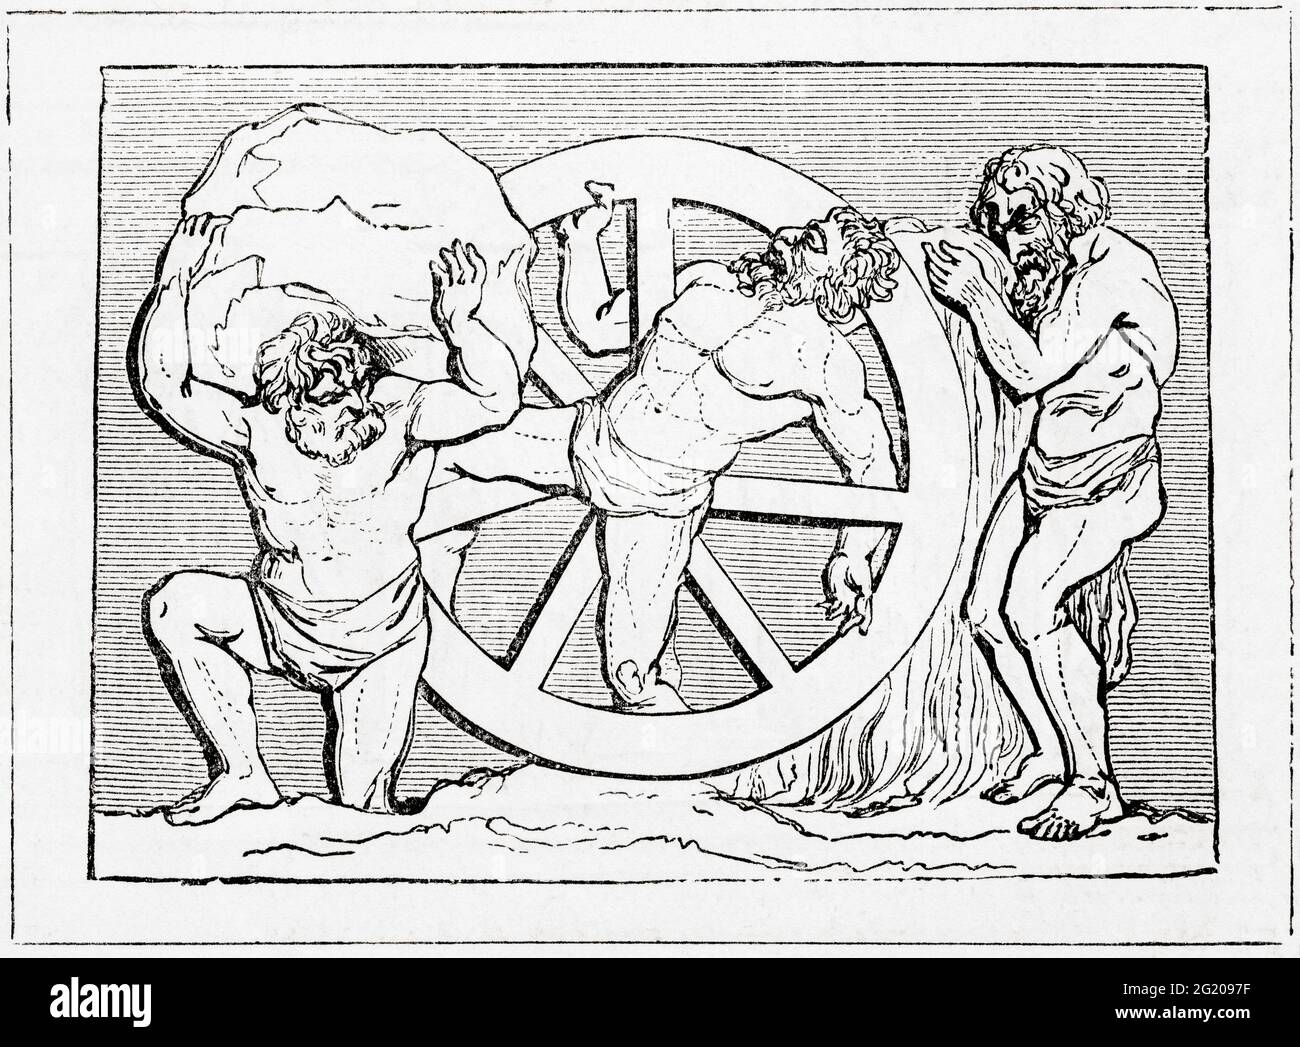 Sisifo, Ixion e Tantalo. Sisyphus o Sisyphos, fondatore e re di Ephyra, punito per aver imbrogliato la morte due volte essendo fatto rotolare un masso enorme su una collina solo per rotolare giù ogni volta che si avvicinava alla cima, ripetendo questa azione per l'eternità. Ixion, re dei Lapiti legato ad una ruota infuocata che girava sempre. Tantalo, aka ATYS, figura mitologica greca fatta stare in una piscina d'acqua sotto un albero da frutto con rami bassi, con il frutto che si è mai sottratta, e l'acqua che si sta sempre recedendo prima di poter prendere una bevanda. Da UNA storia popolare della Grecia, pubblicare Foto Stock